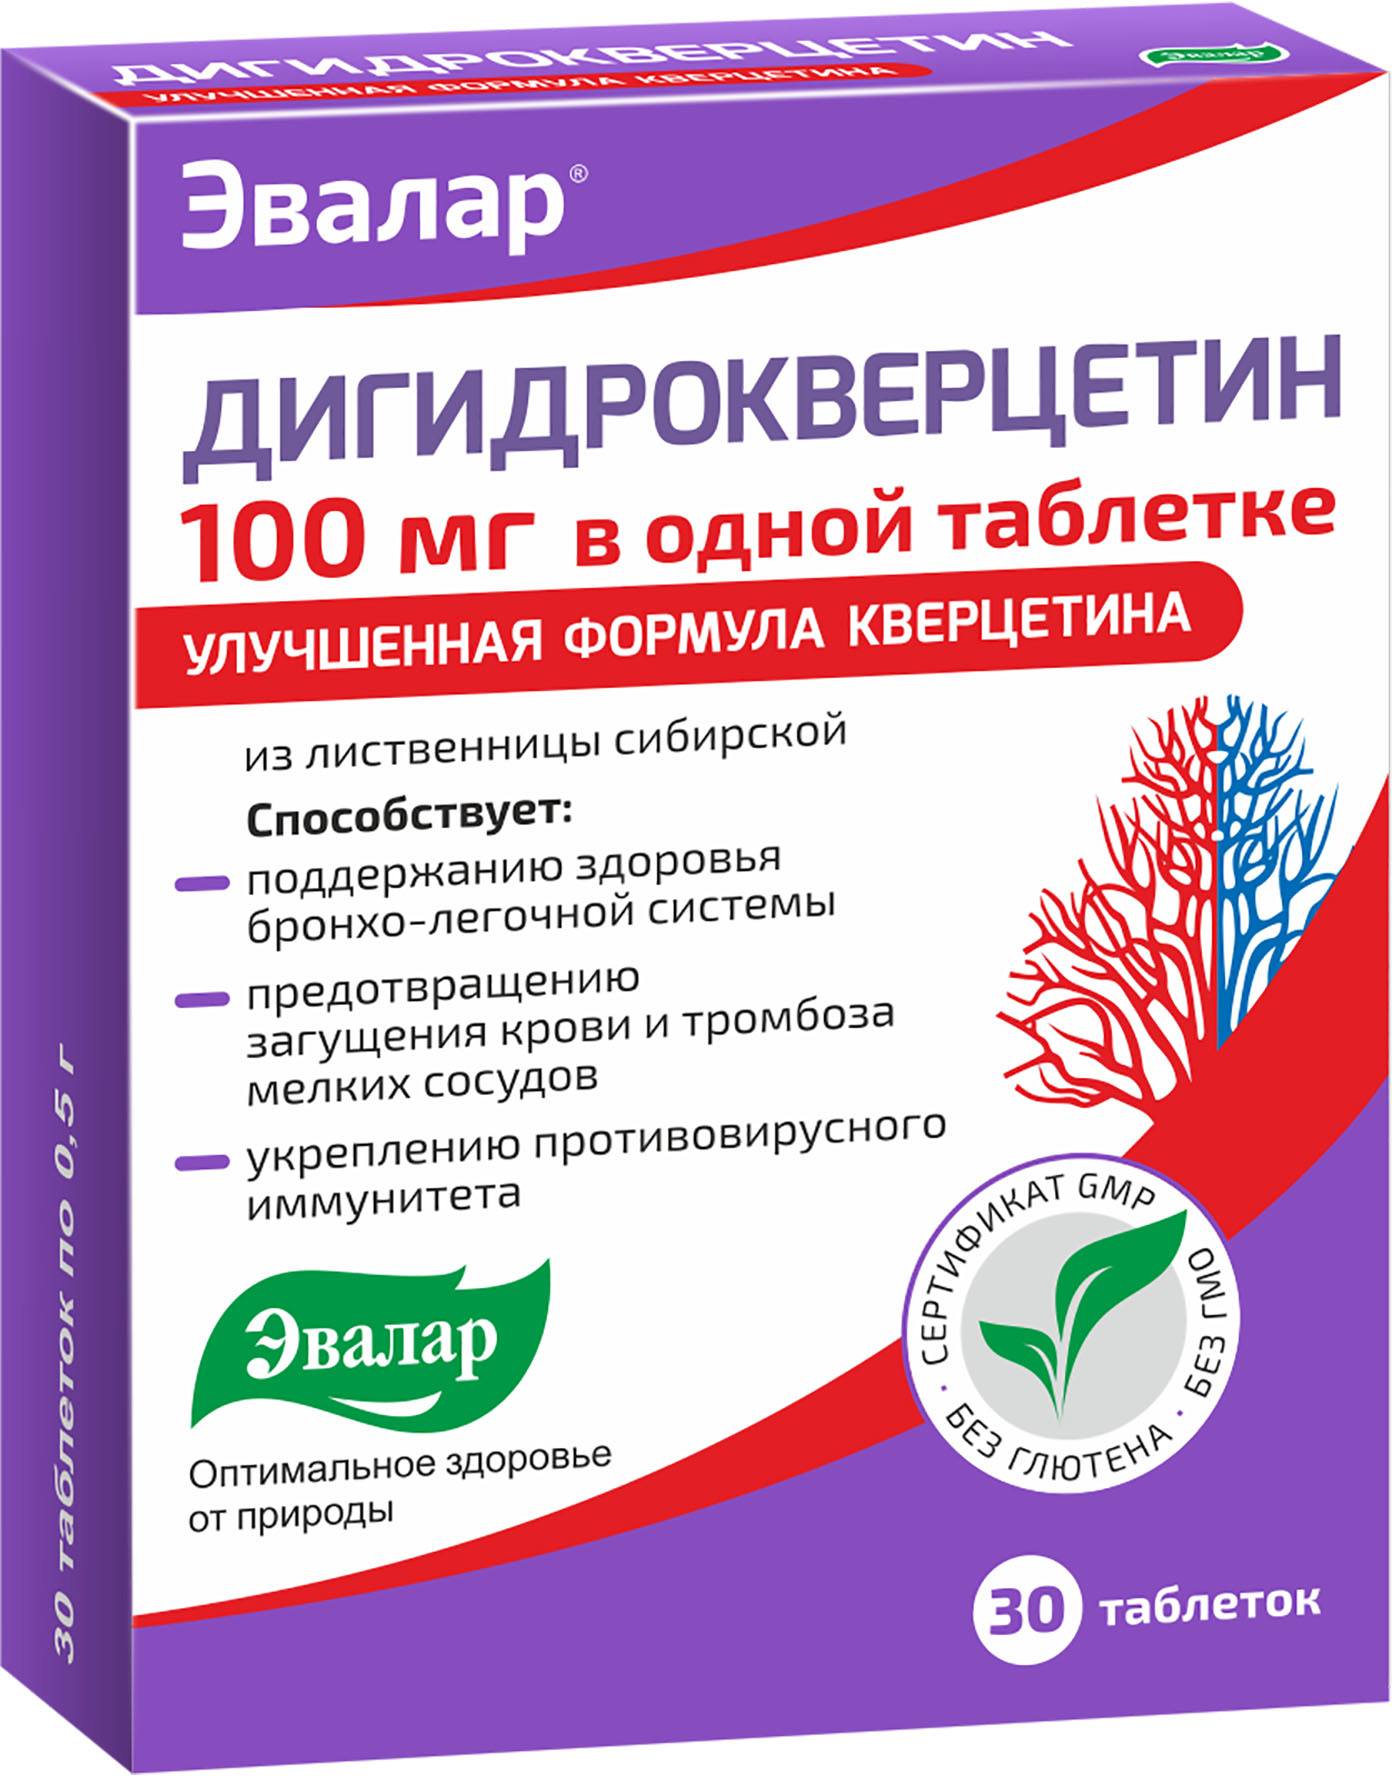 Дигидрокверцетин 100 мг, таблетки 0.5 г, 30 шт.